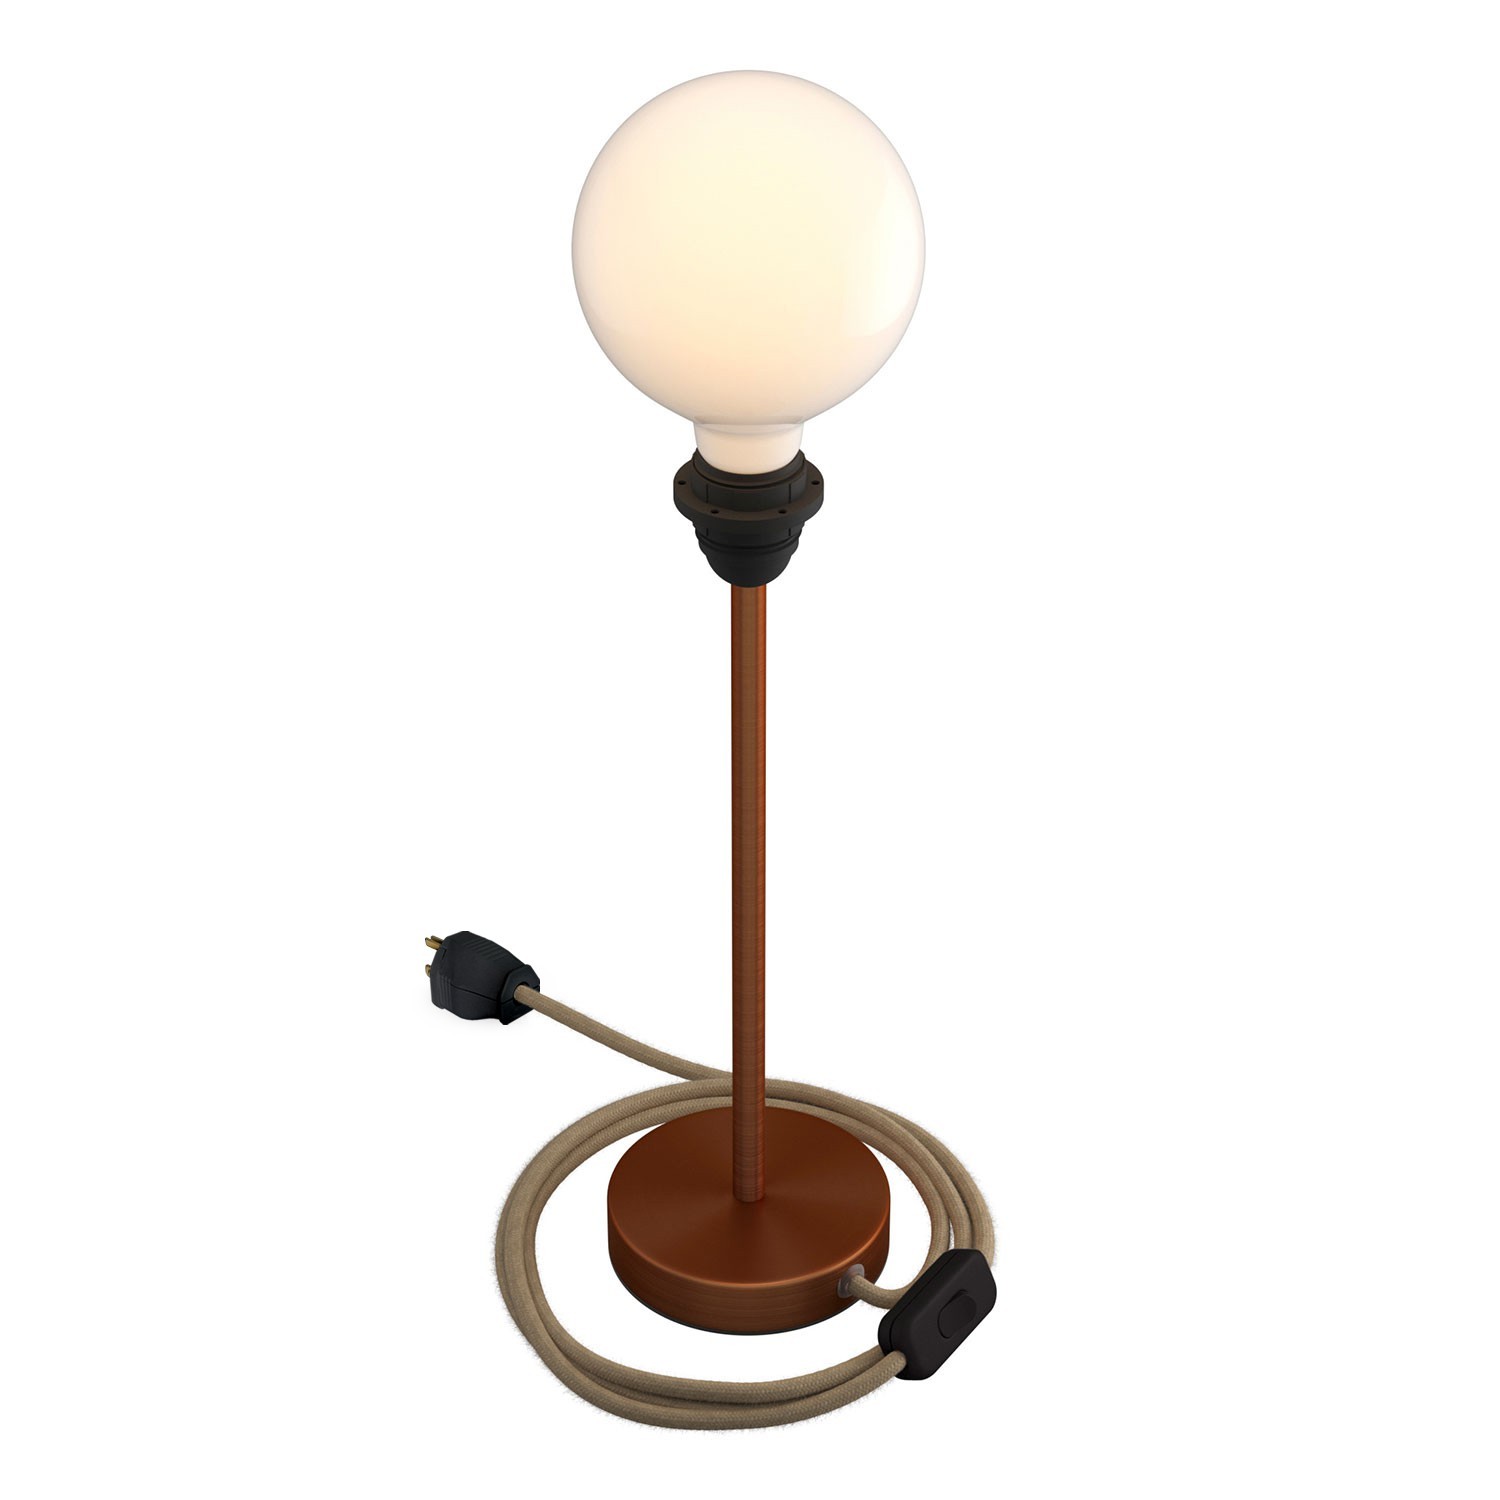 Alzaluce para Pantallas - Lámpara de mesa en metal con cable, interruptor y clavija